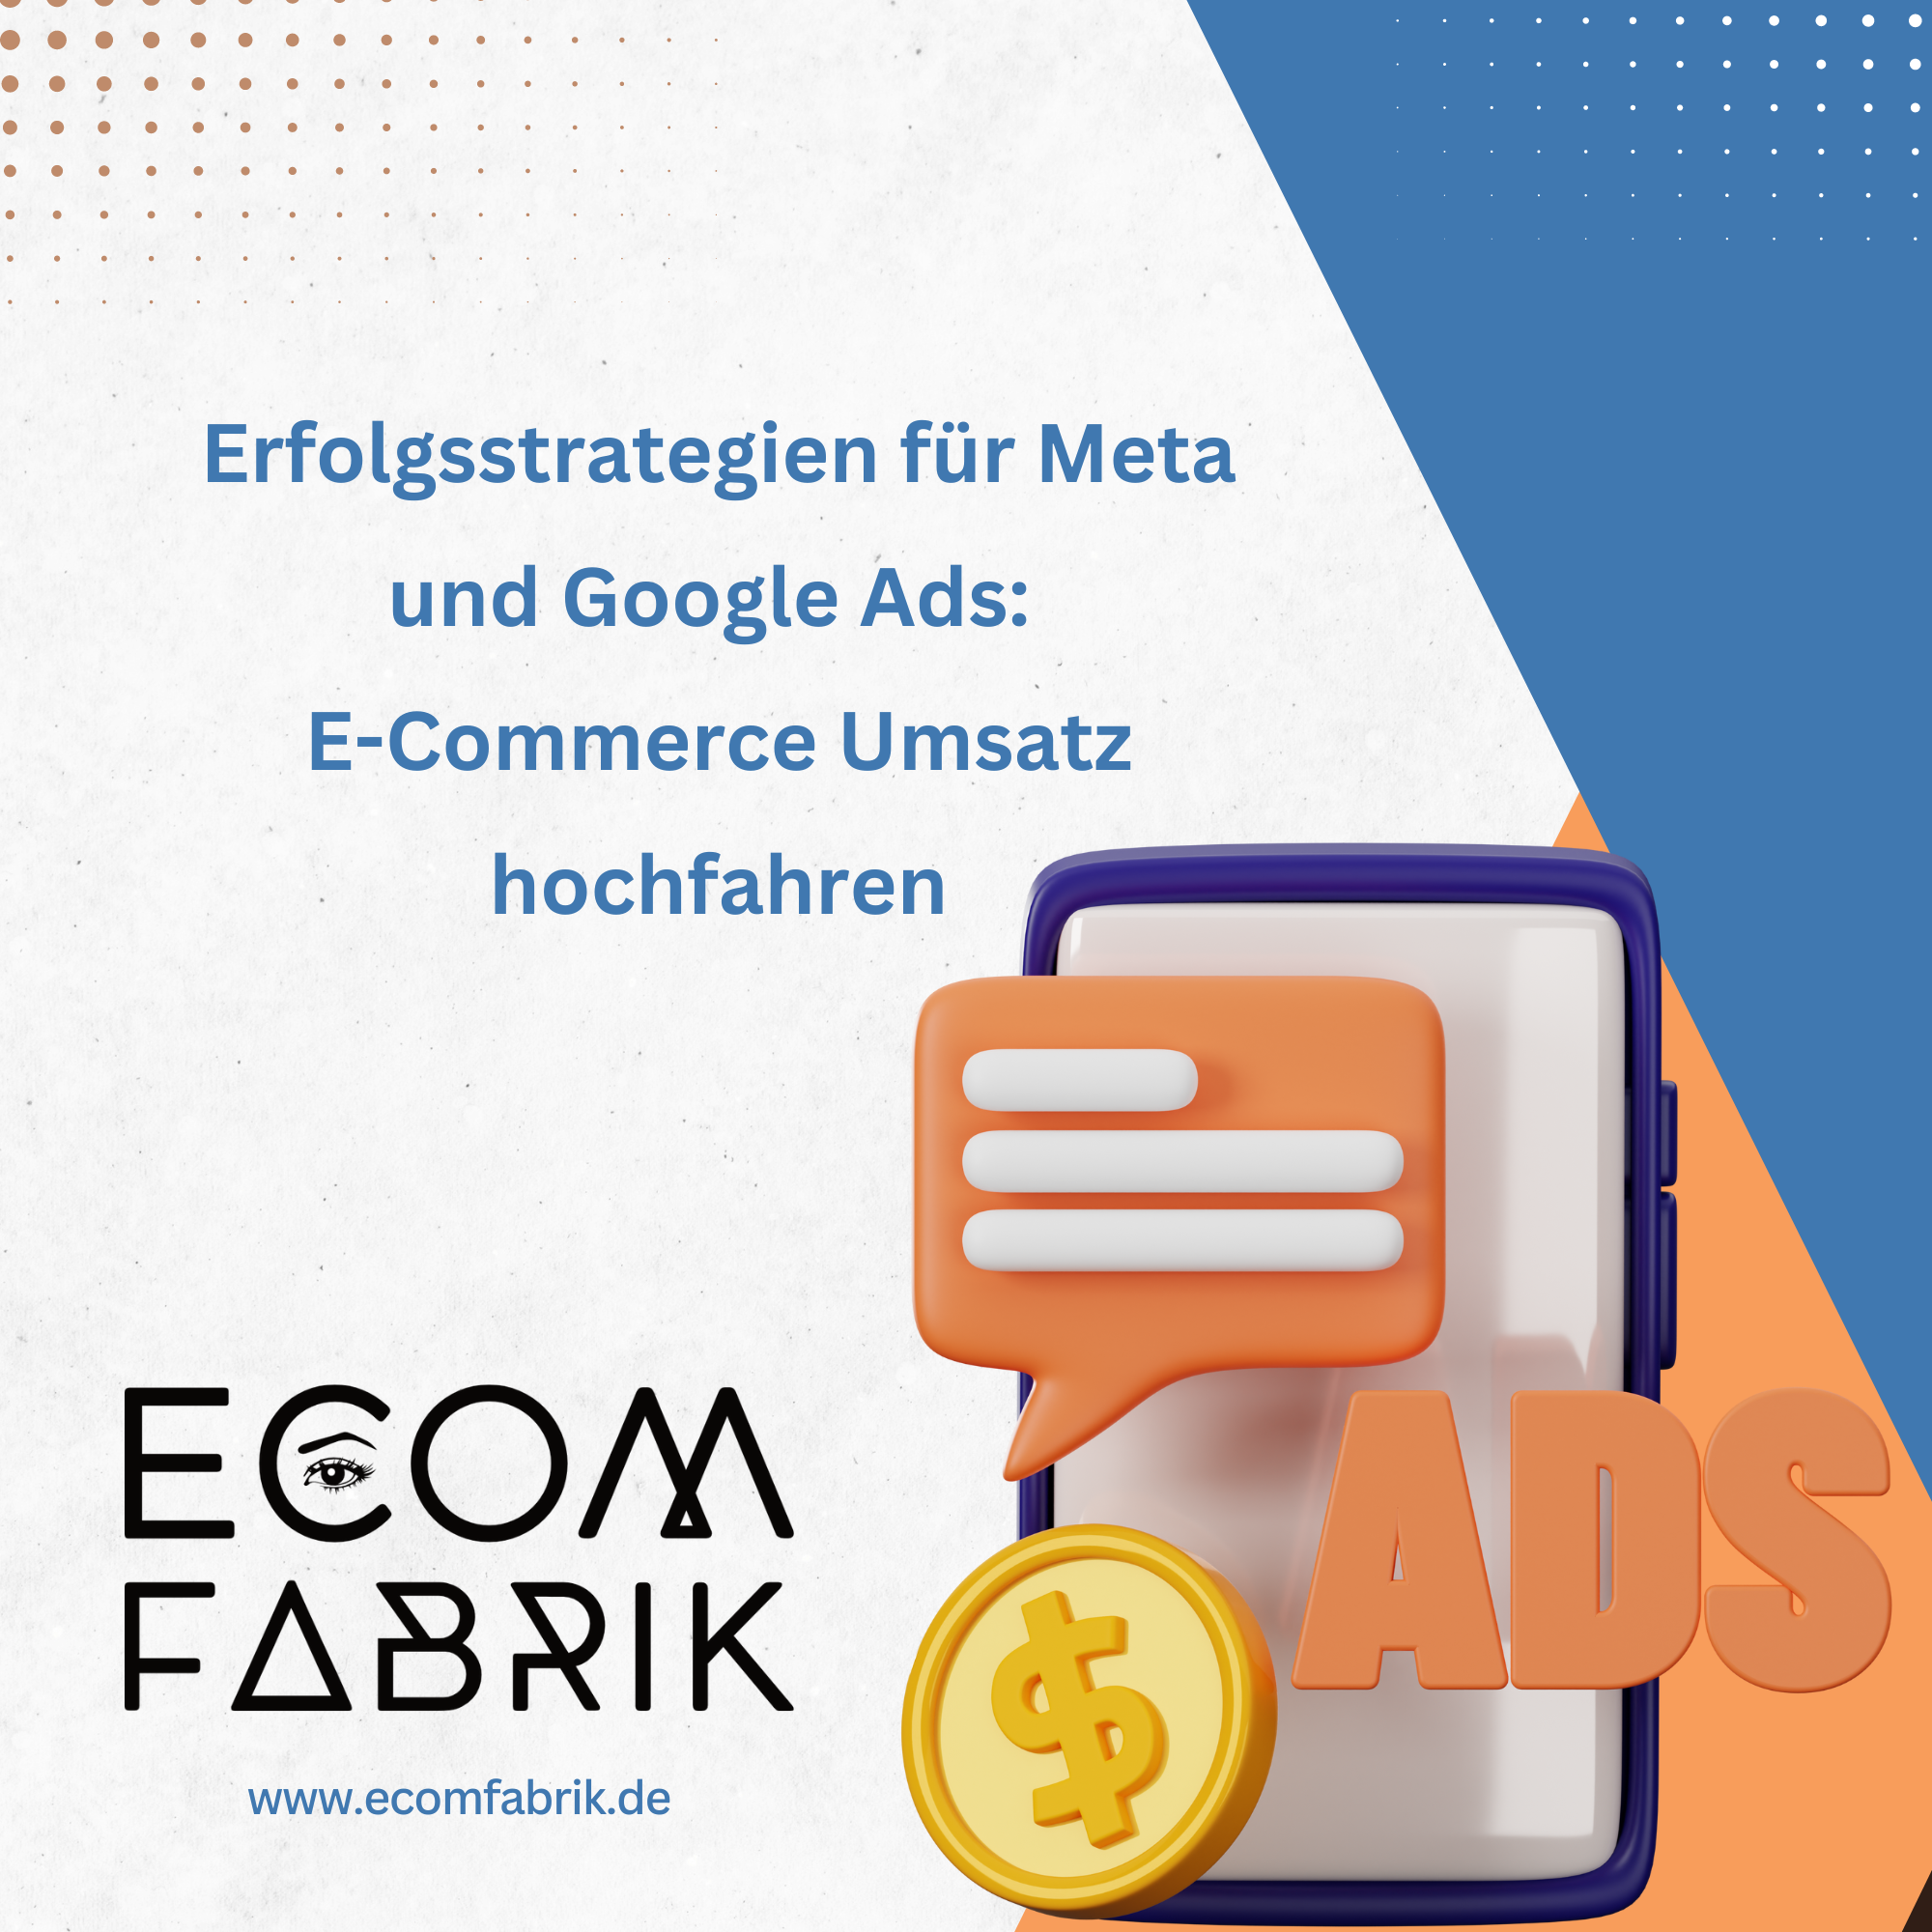 Erfolgsstrategien für Meta und Google Ads: E-Commerce Umsatz hochfahren